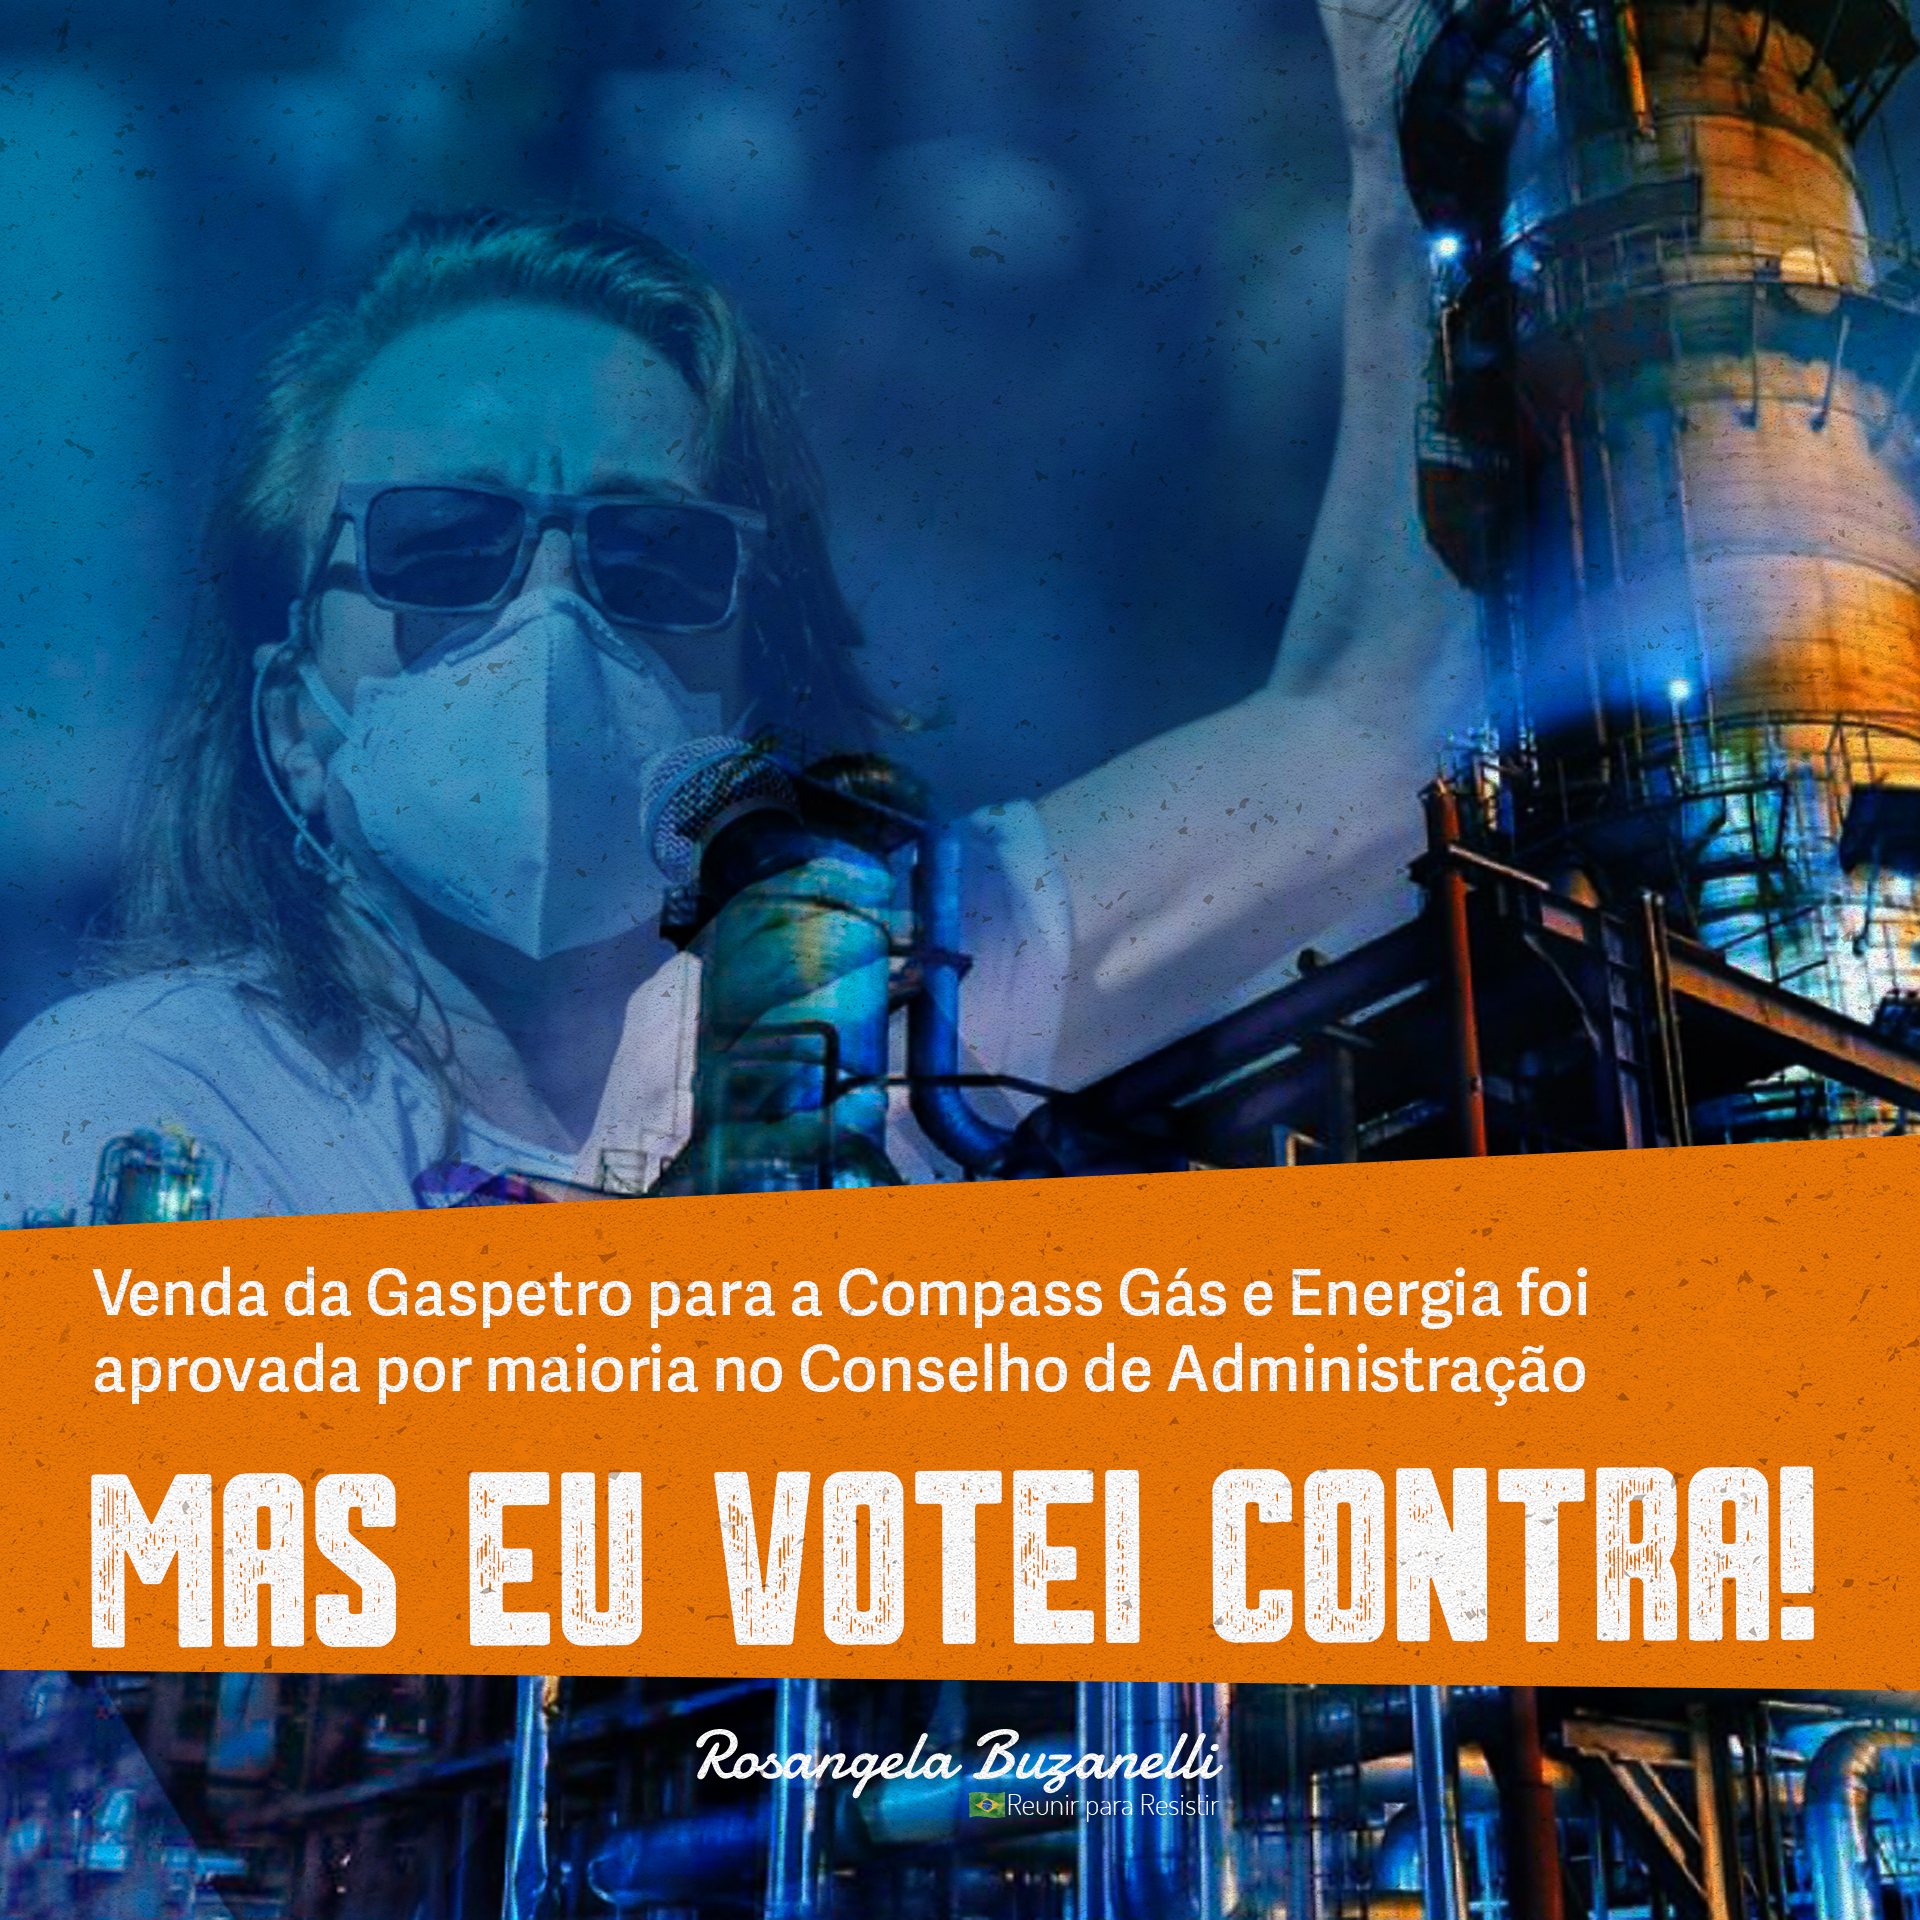 Conselheira vota contra assinatura do contrato para venda da Gaspetro